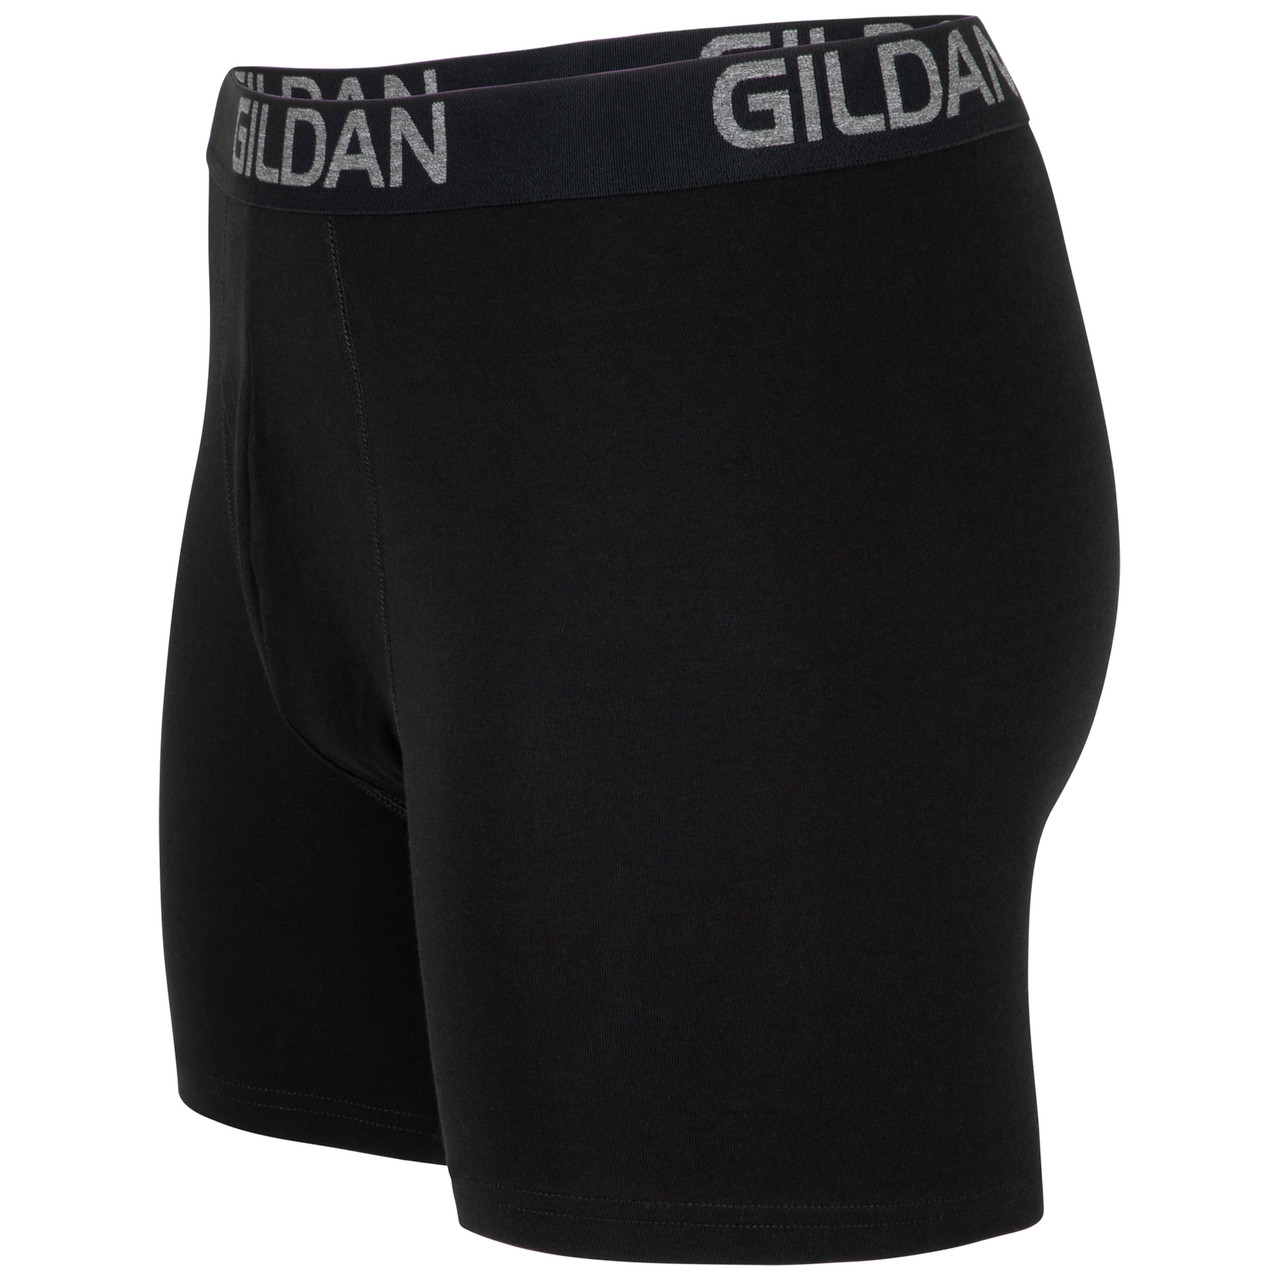 Gildan Mens Short Leg Boxer Briefs 5 Pack : : Clothing, Shoes &  Accessories